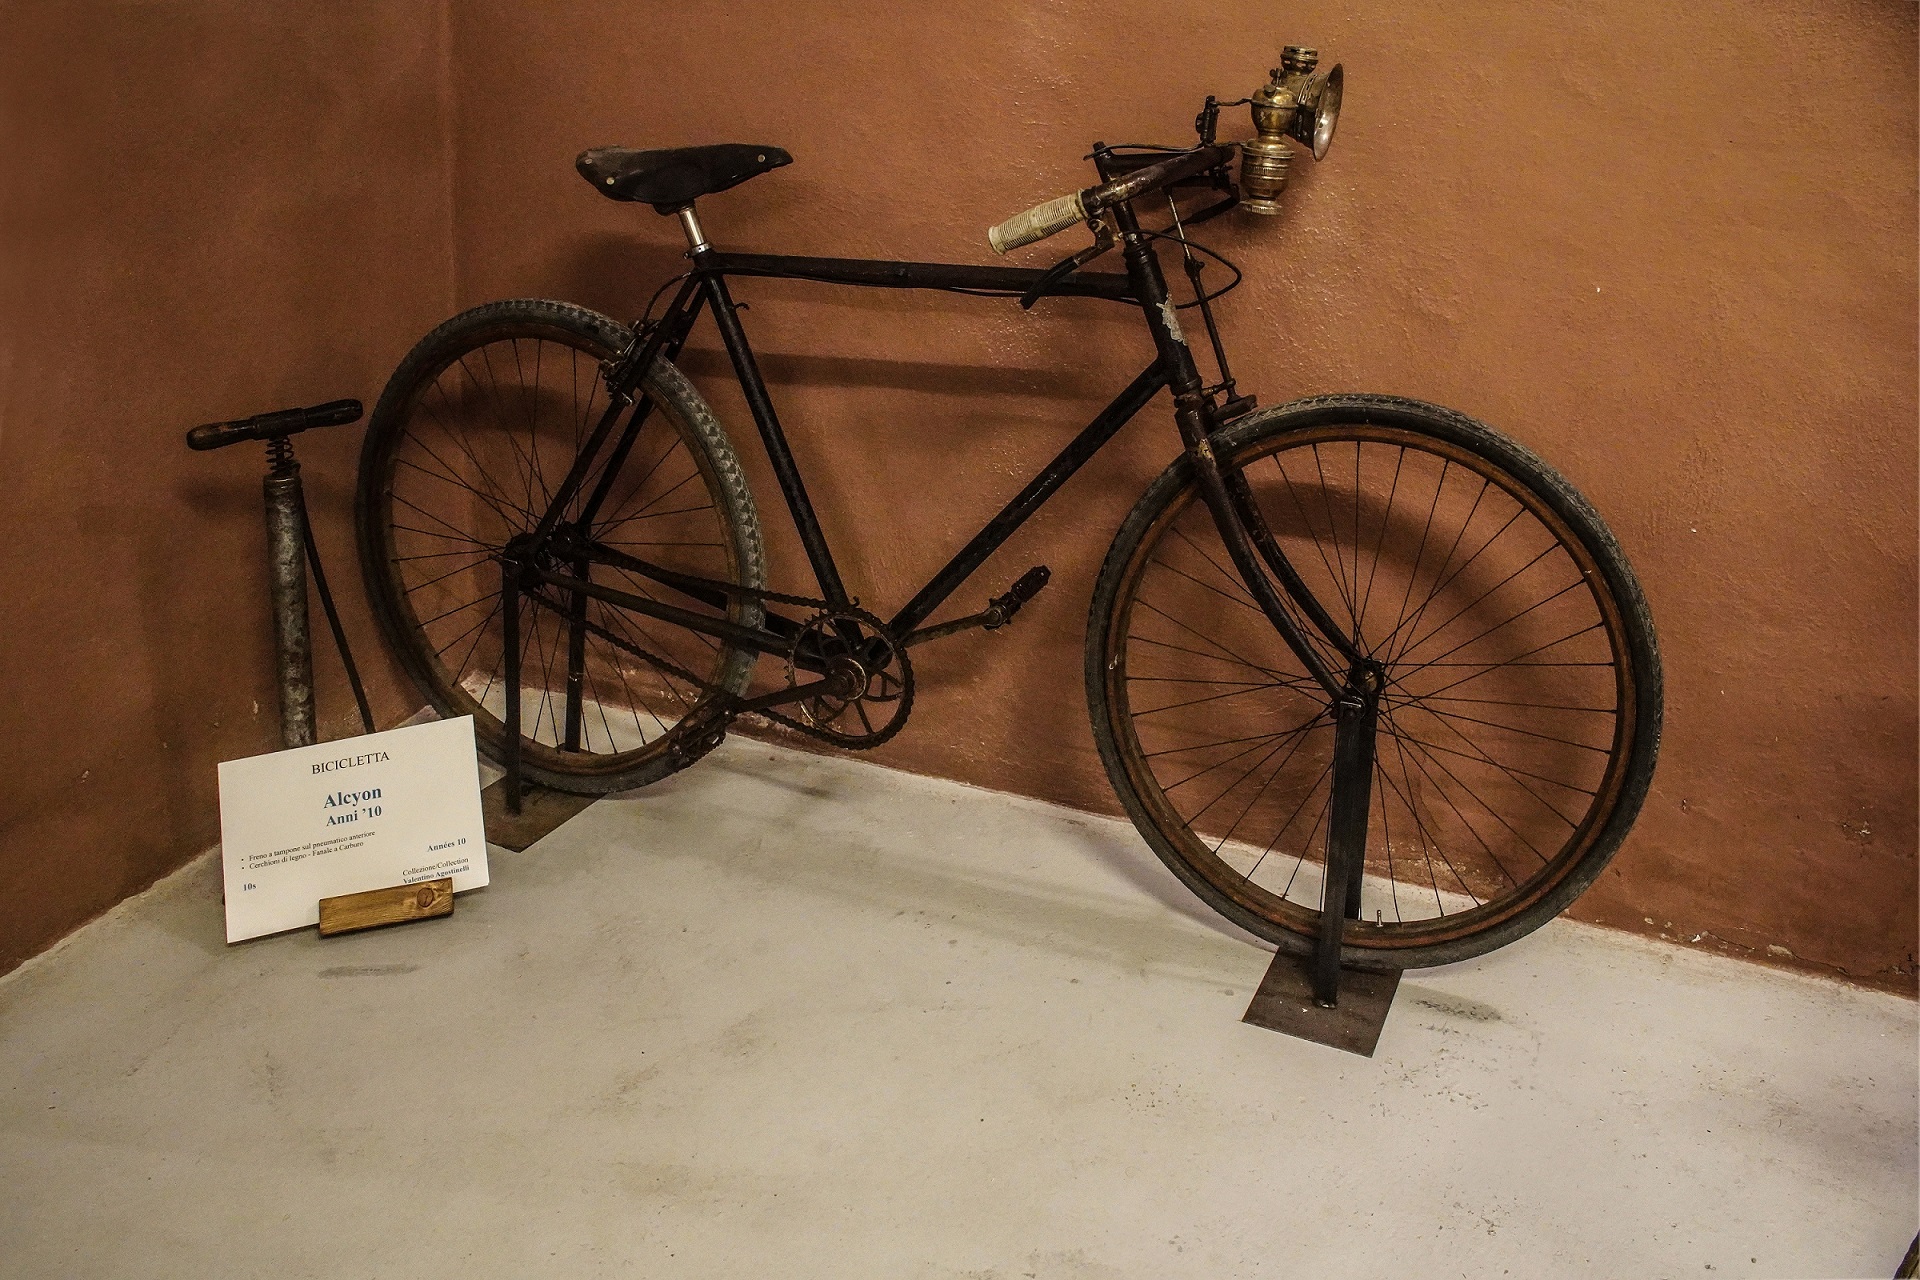 Museo dei mestieri in bicicletta